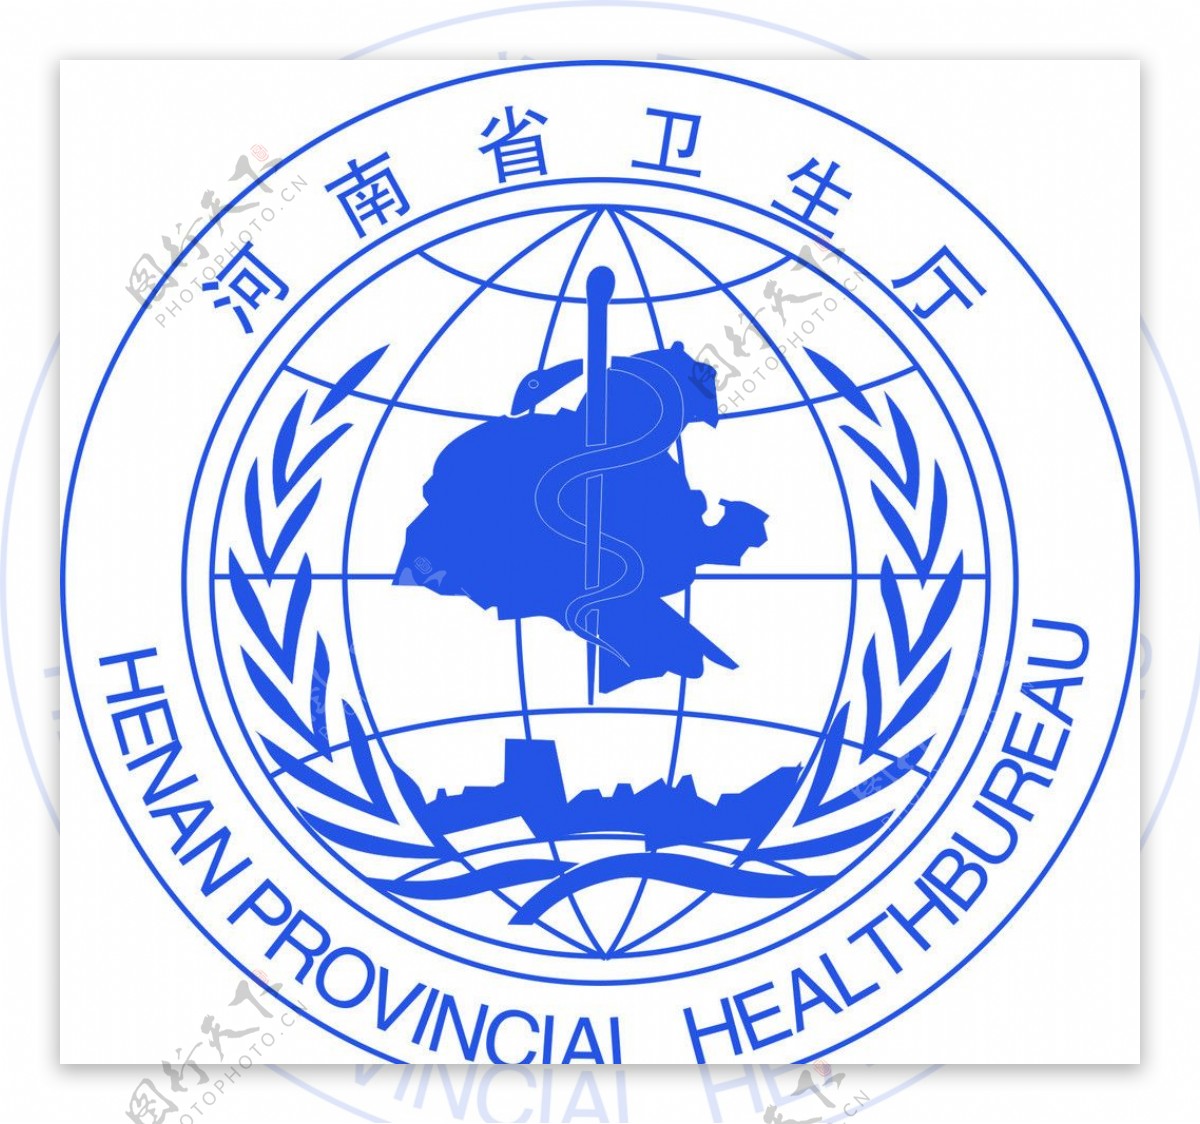 河南省卫生厅标志图片